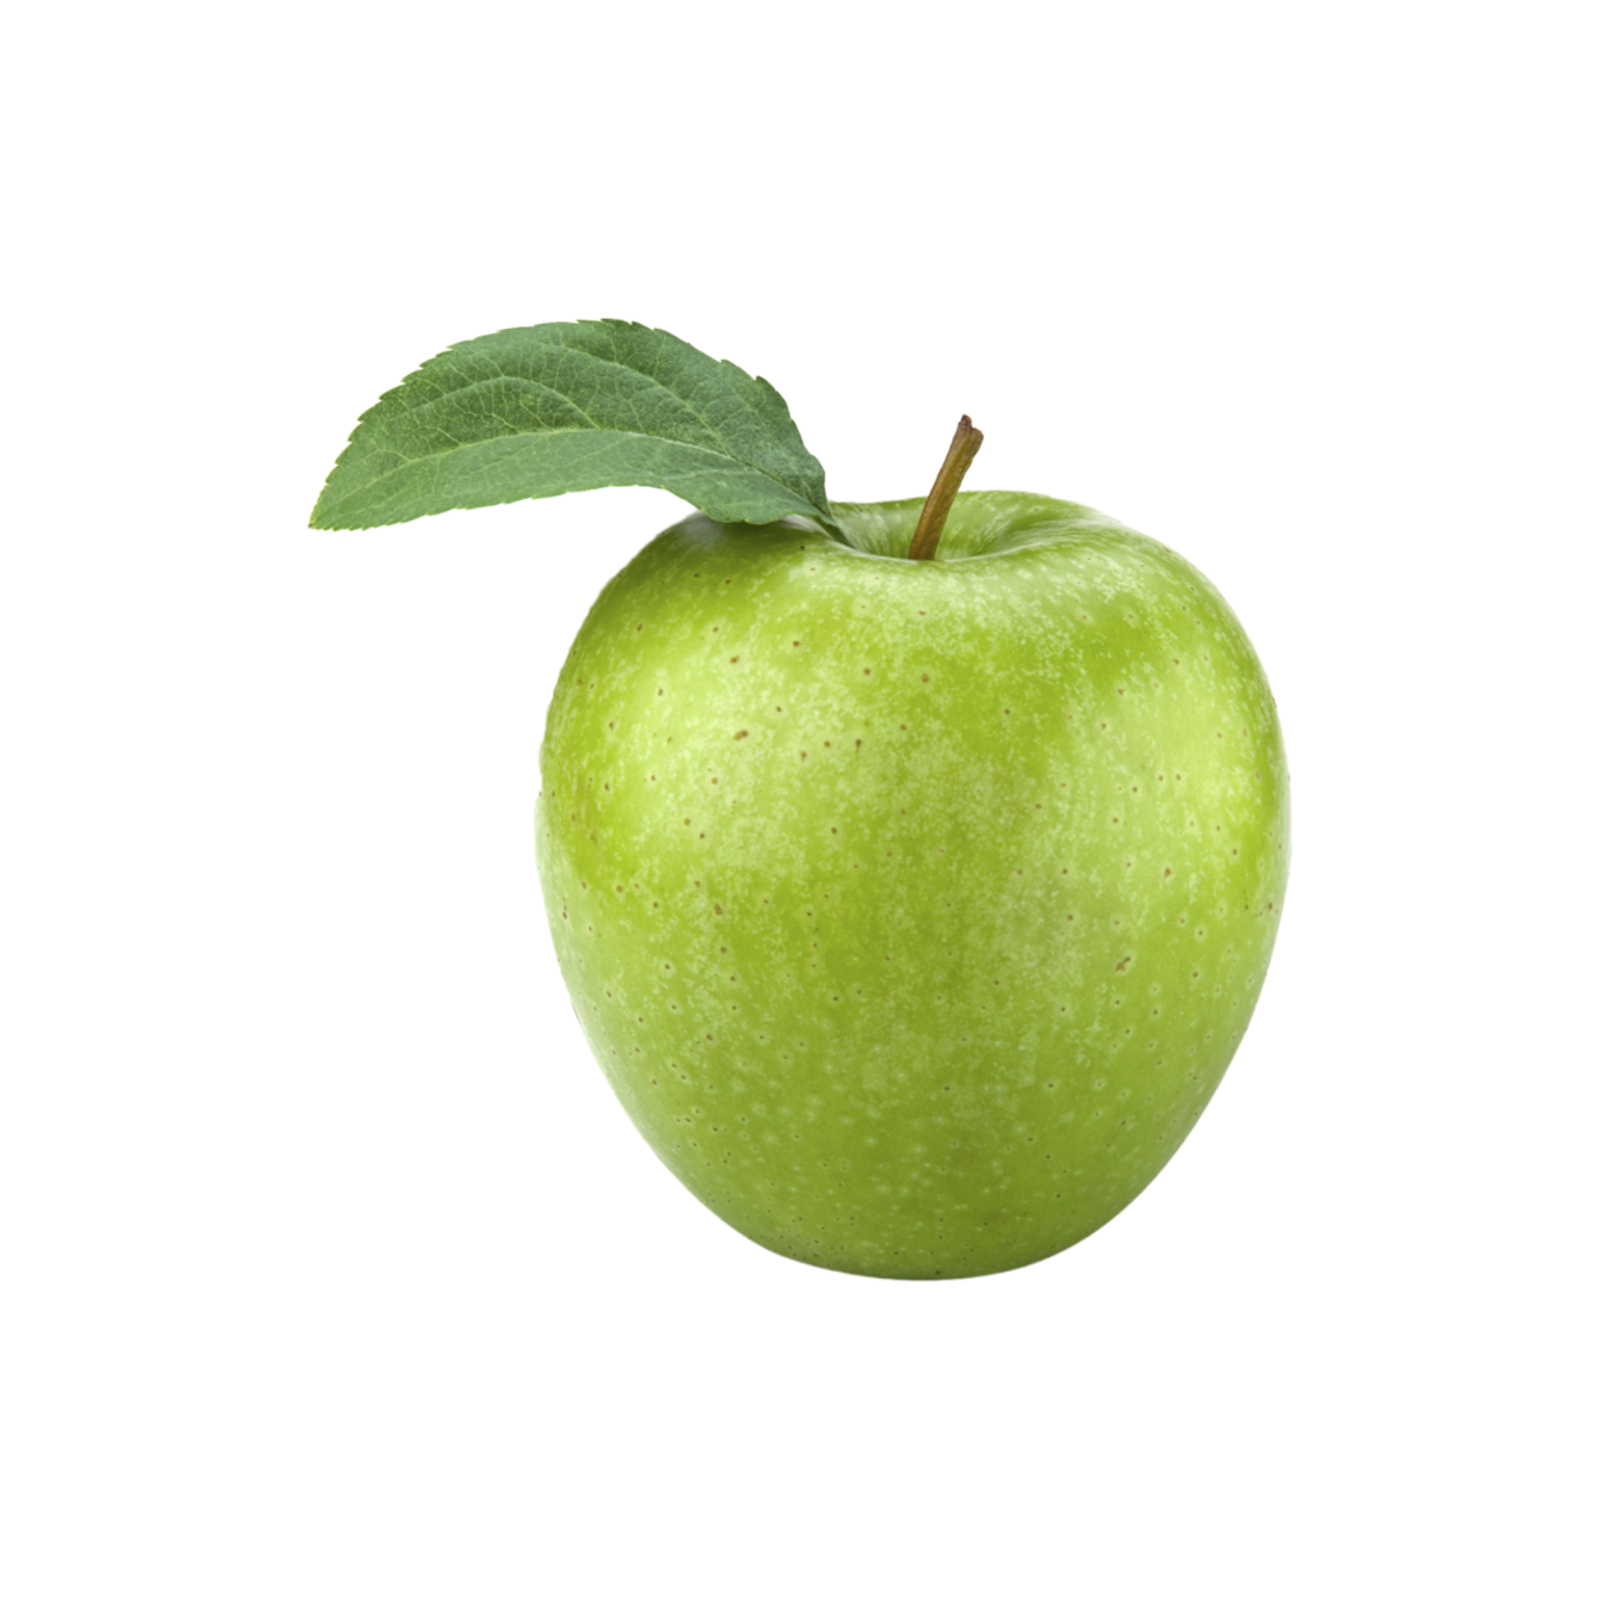 سیب سبز فرانسوی - 2 کیلوگرم